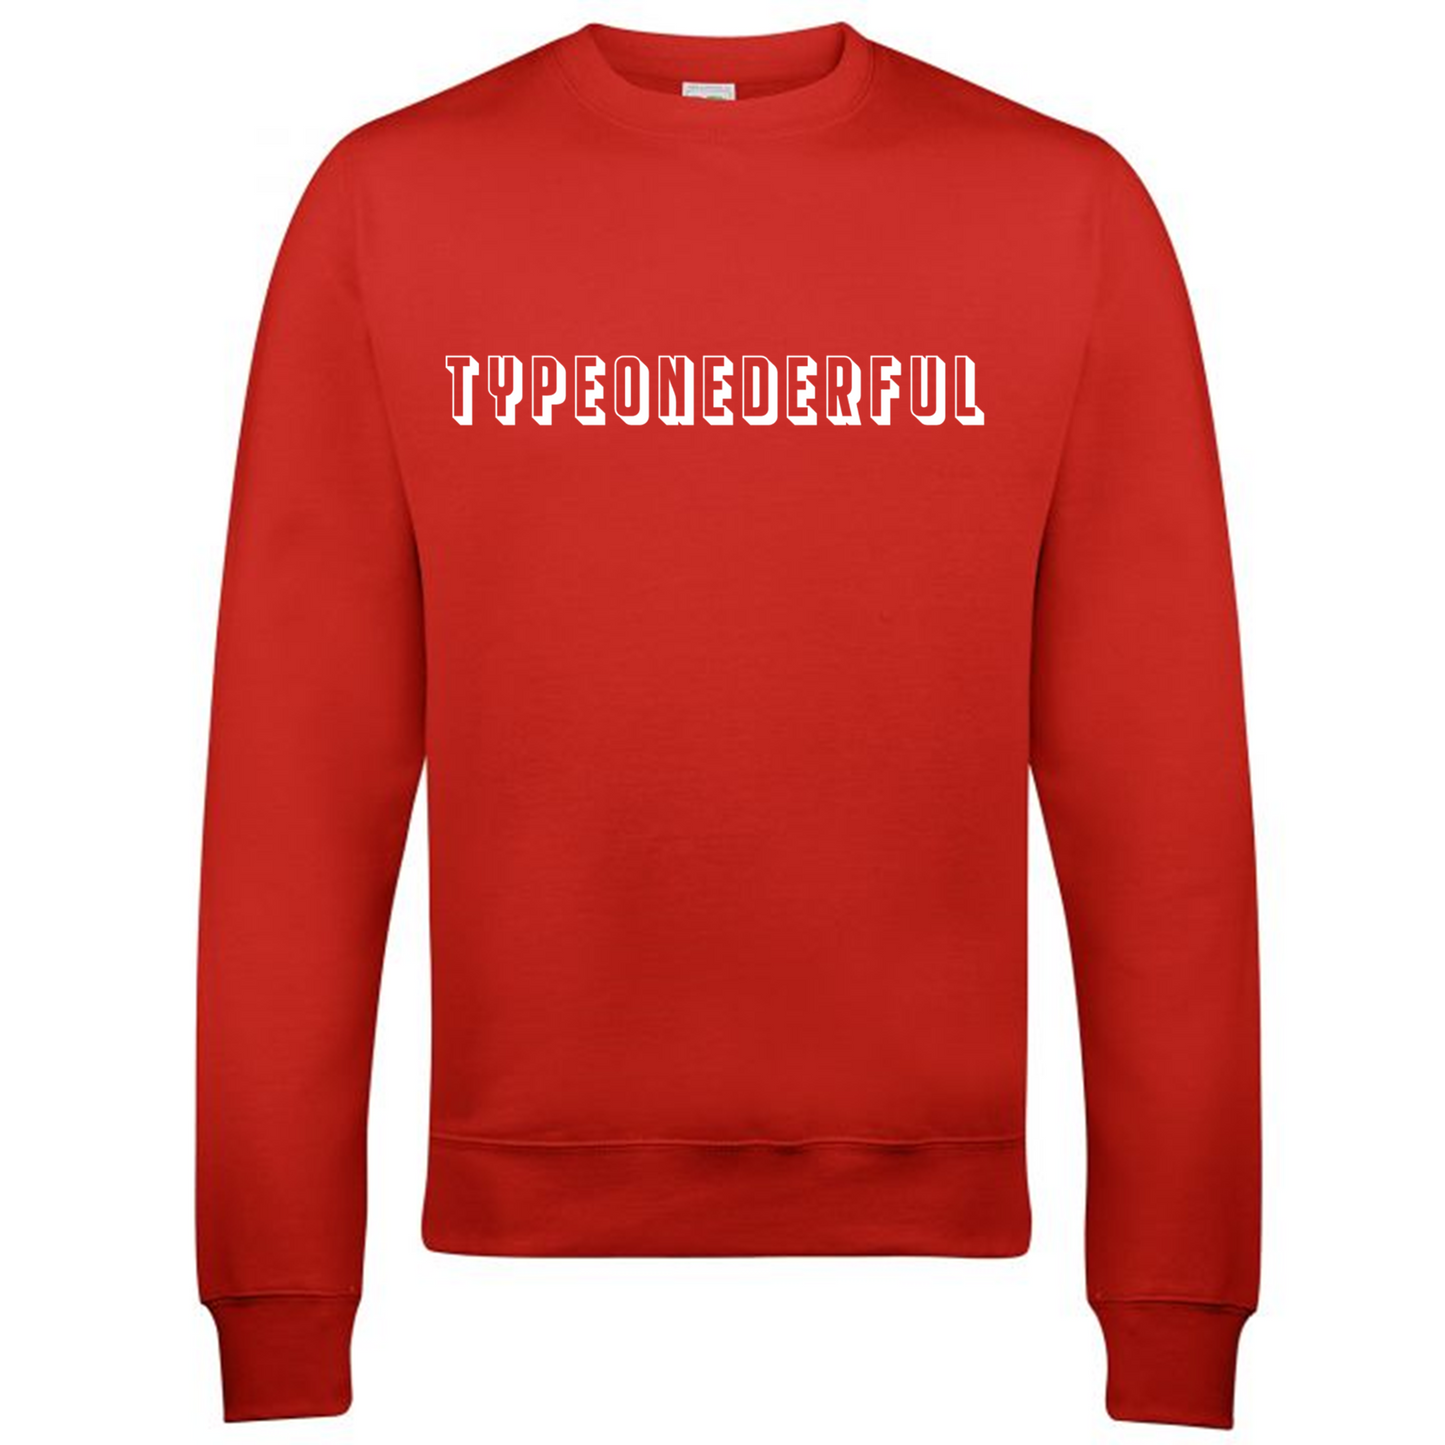 Typeonederful Sweatshirt